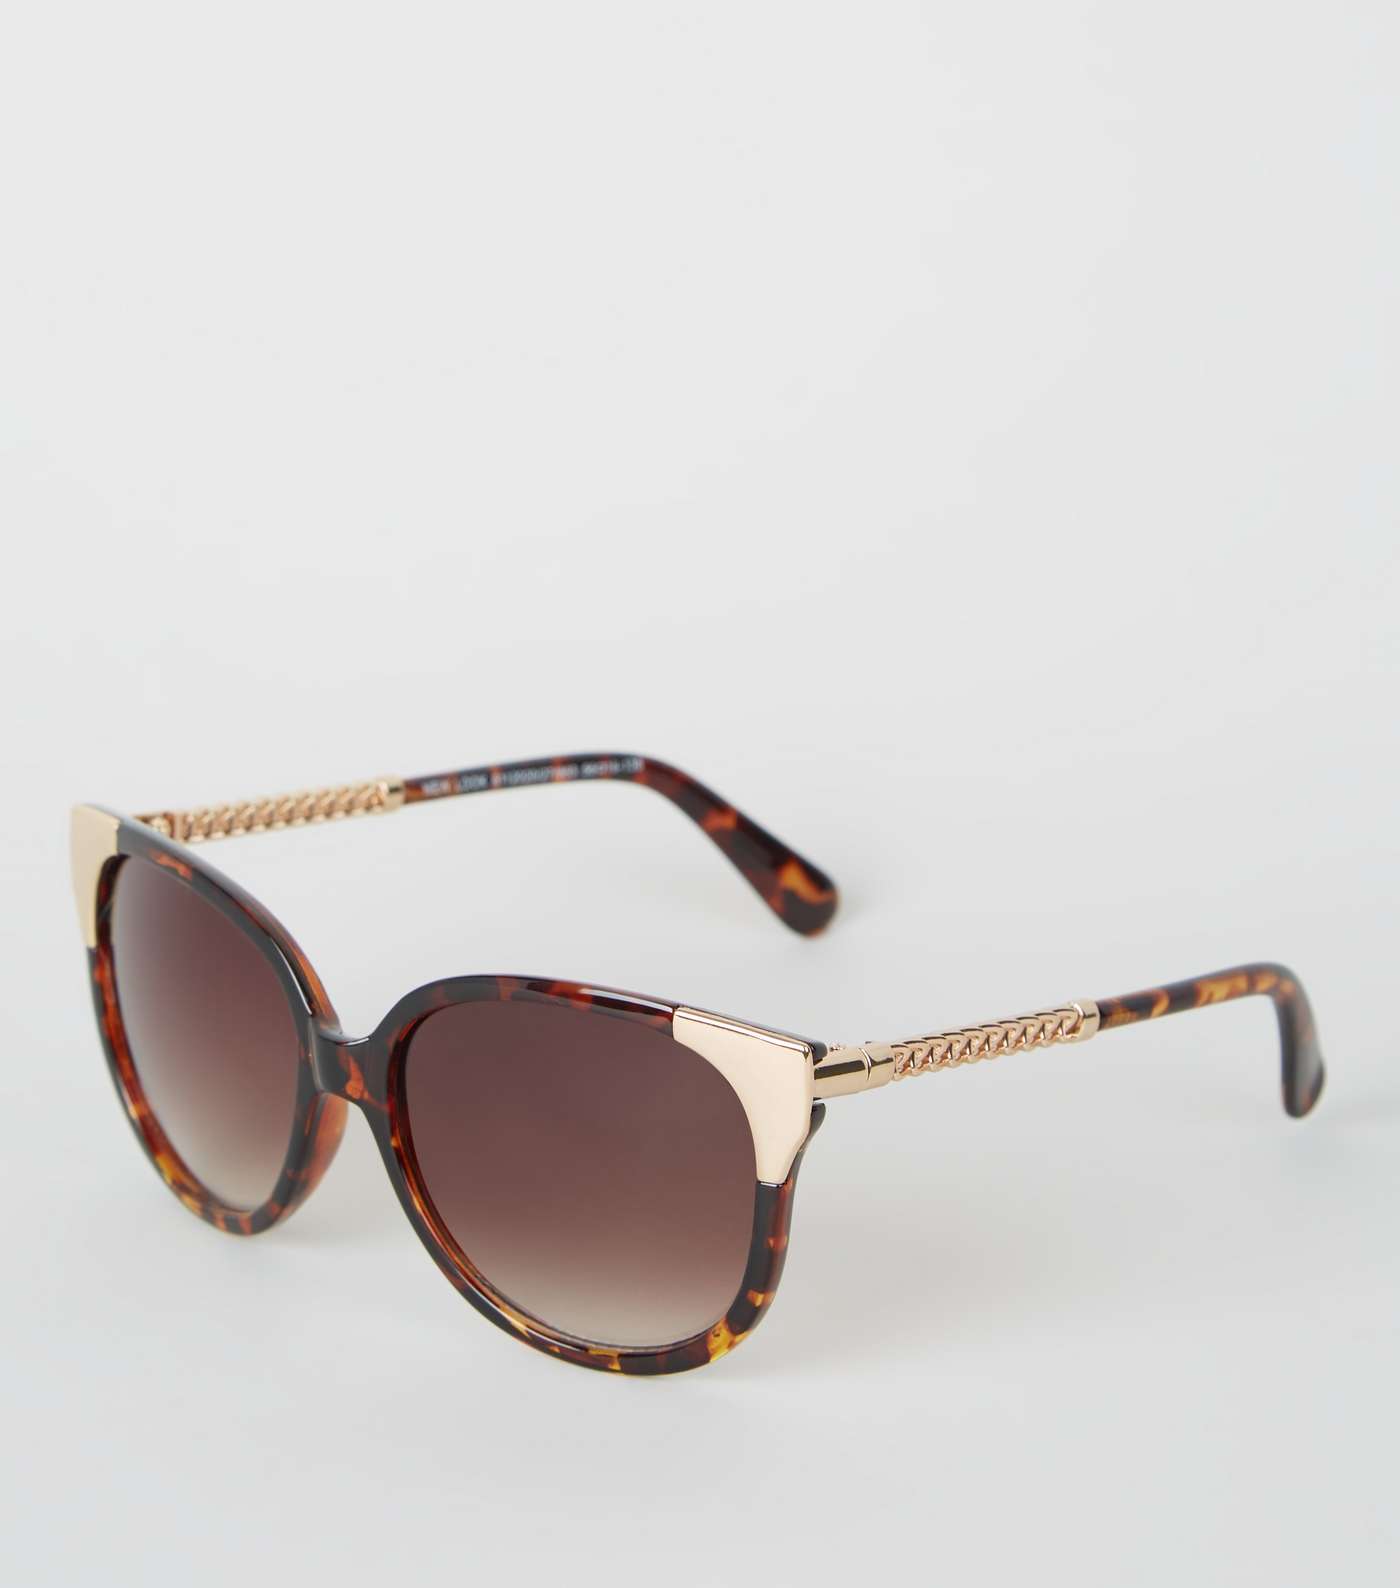 Dark Brown Tortoiseshell Print Sunglasses